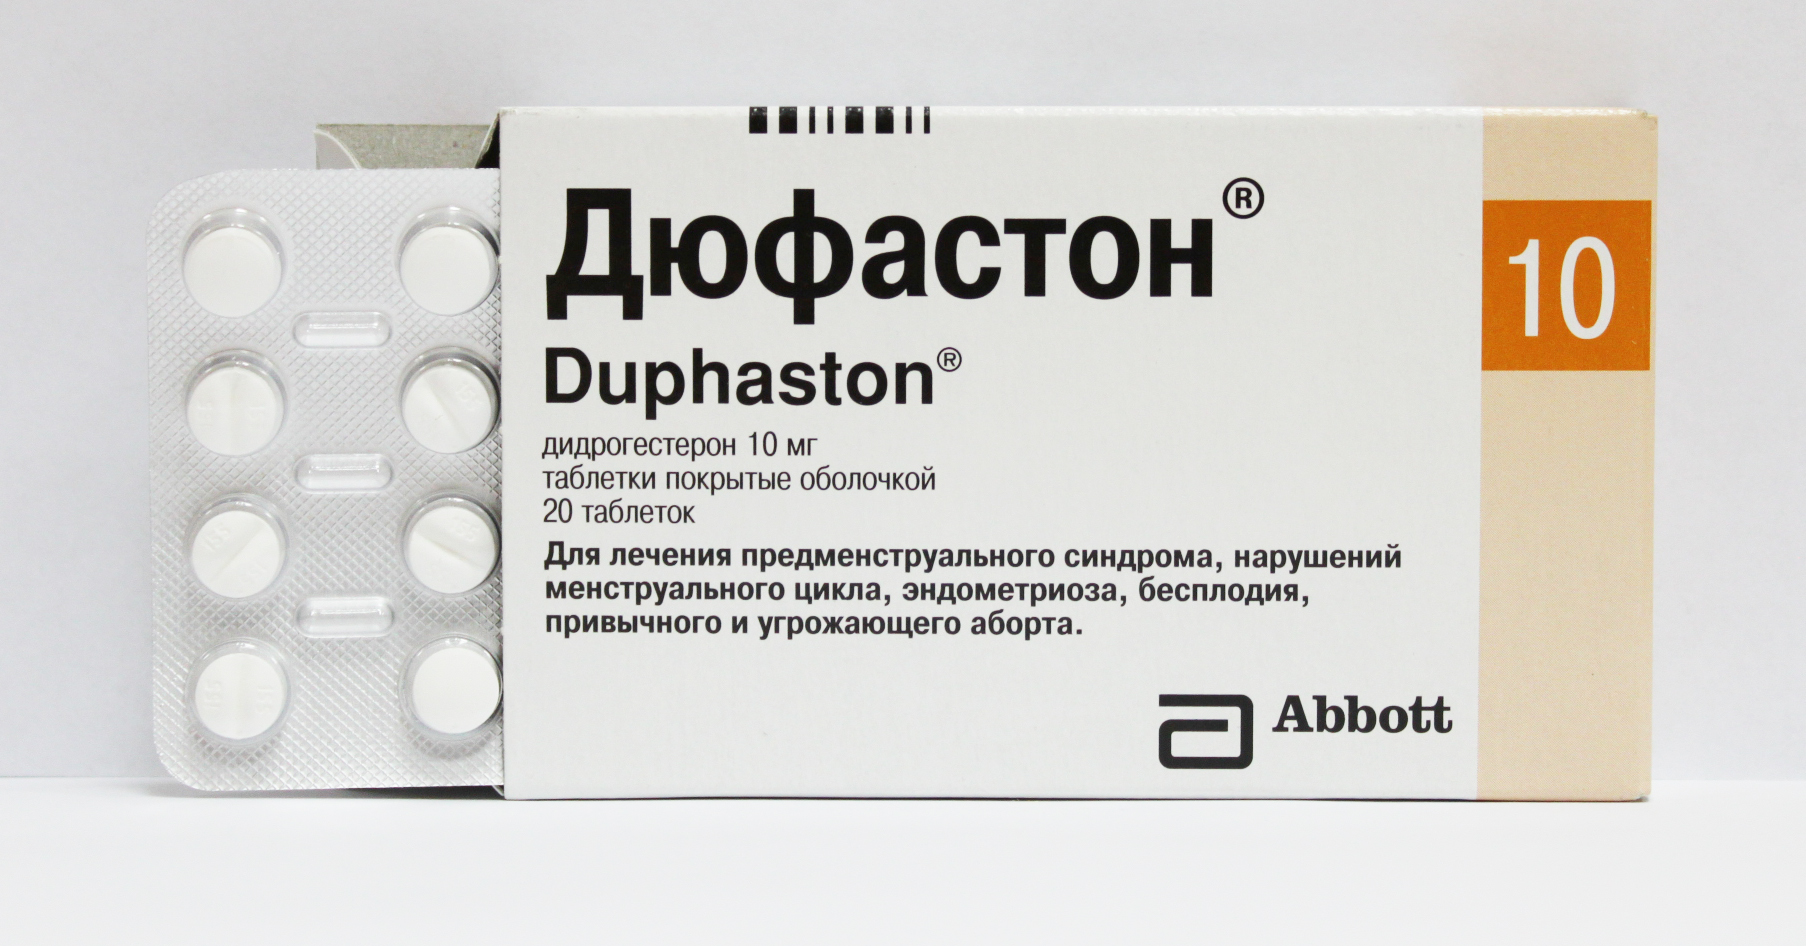 Дюфастон при задержке месячных — как принимать: инструкция по применению гормонального препарата для нормализации цикла